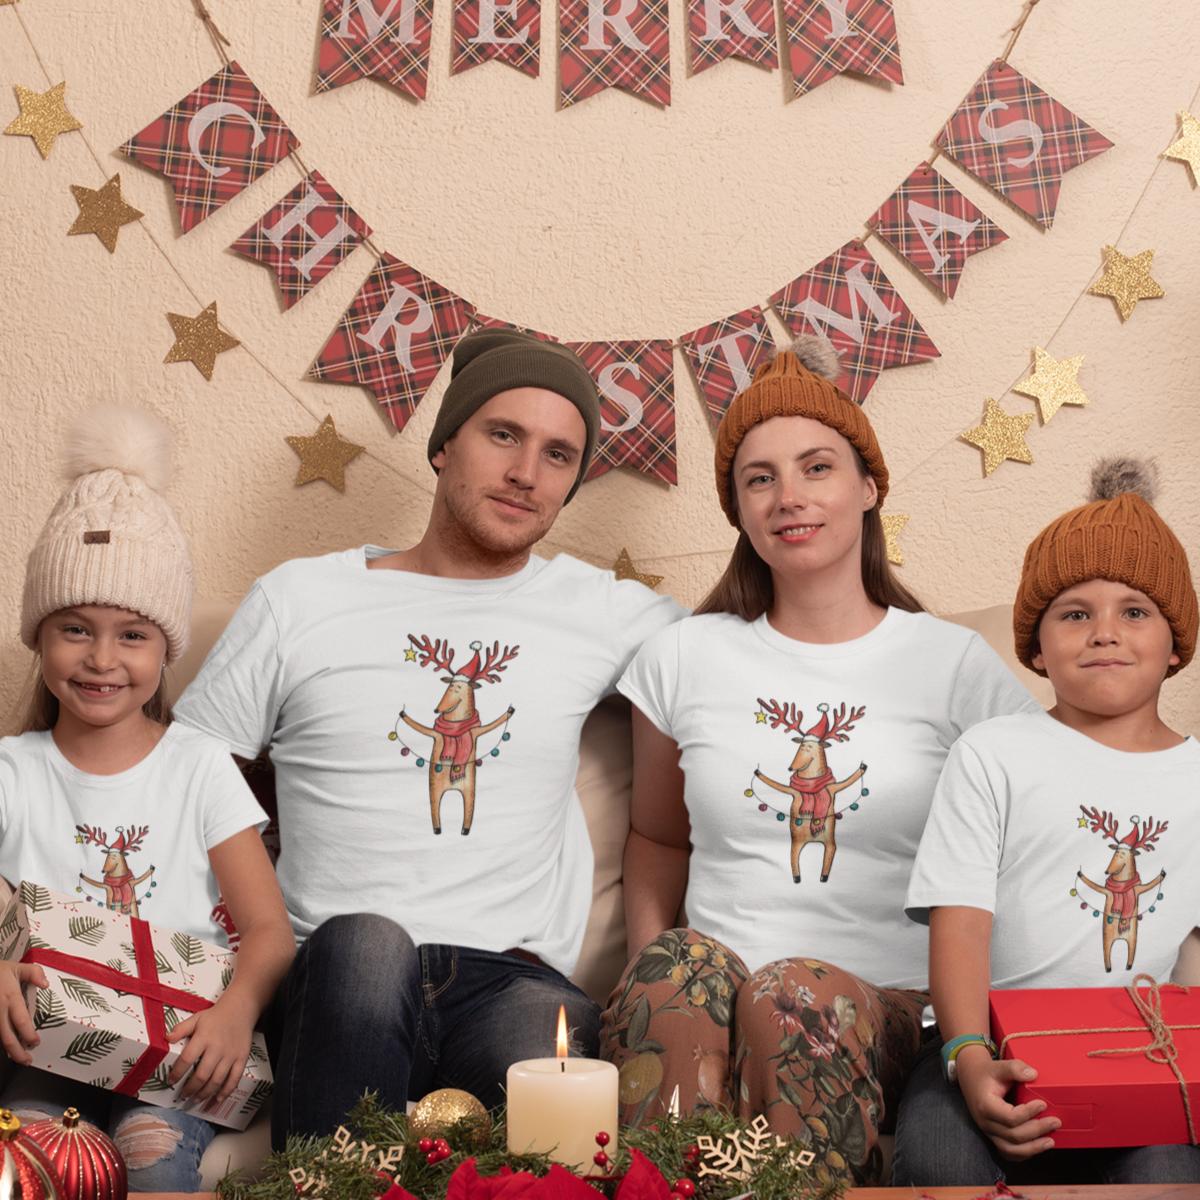 Balti UNISEX marškinėliai šeimoms "Briedžių šeimyna“ Vyriškas dizainas